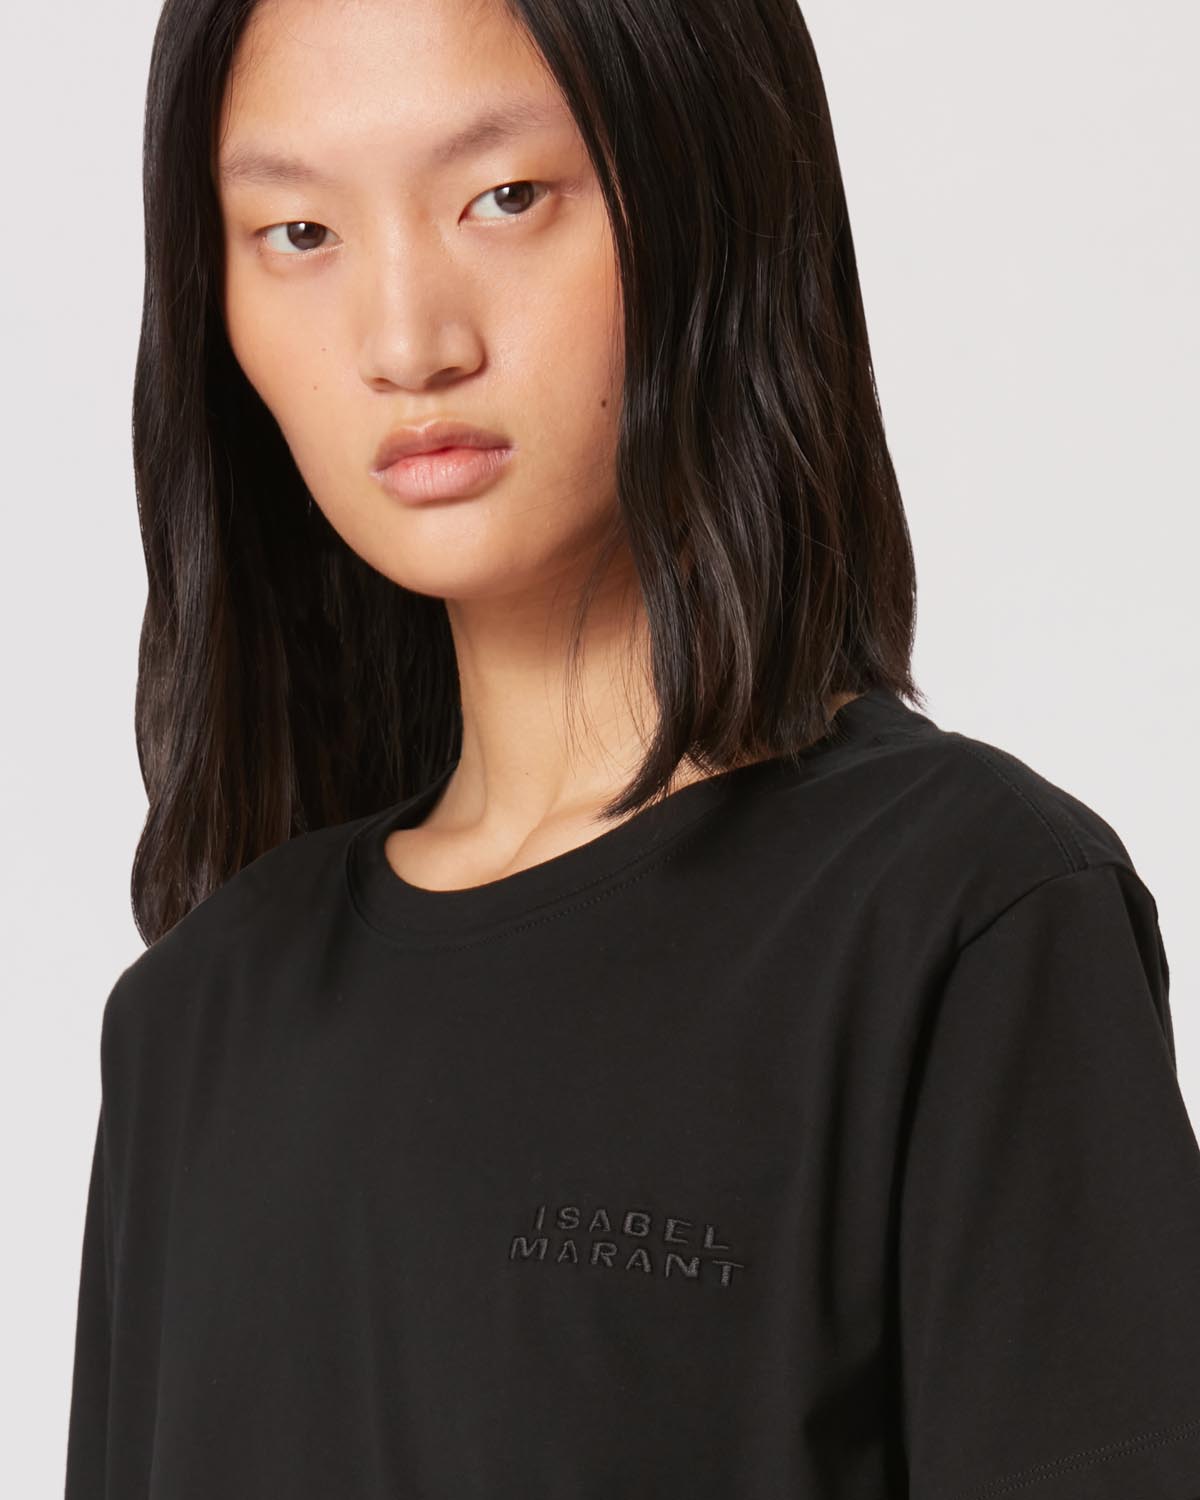 Vidal ロゴ tシャツ Woman 黒 3